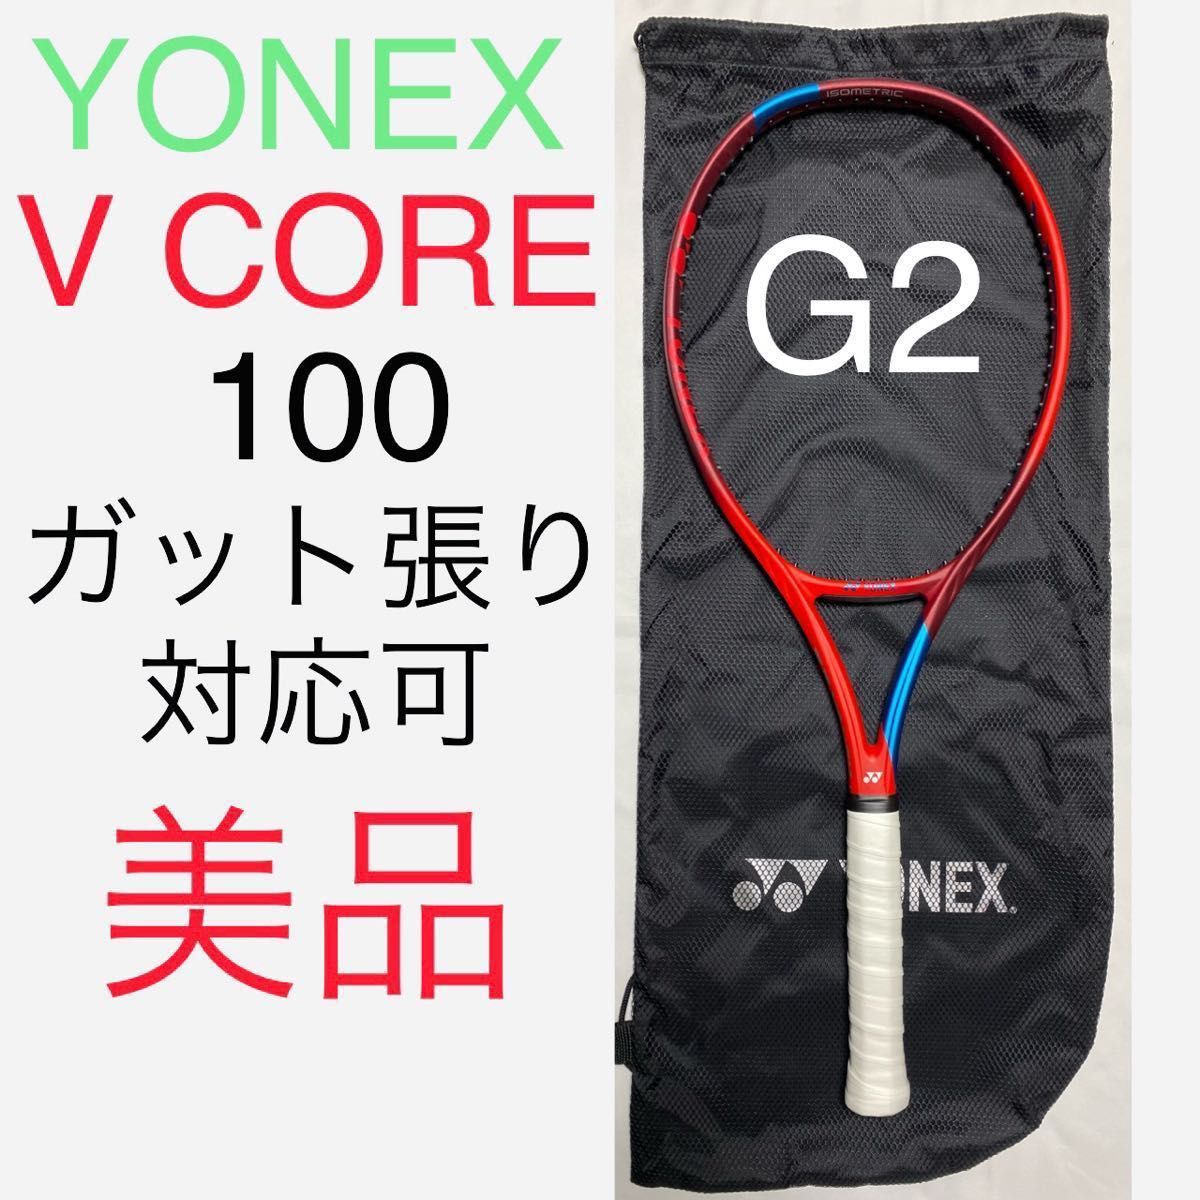 YONEX V CORE 100 G2 ヨネックス ブイコア 100 VCORE Vコア 硬式テニスラケット ケースおまけ